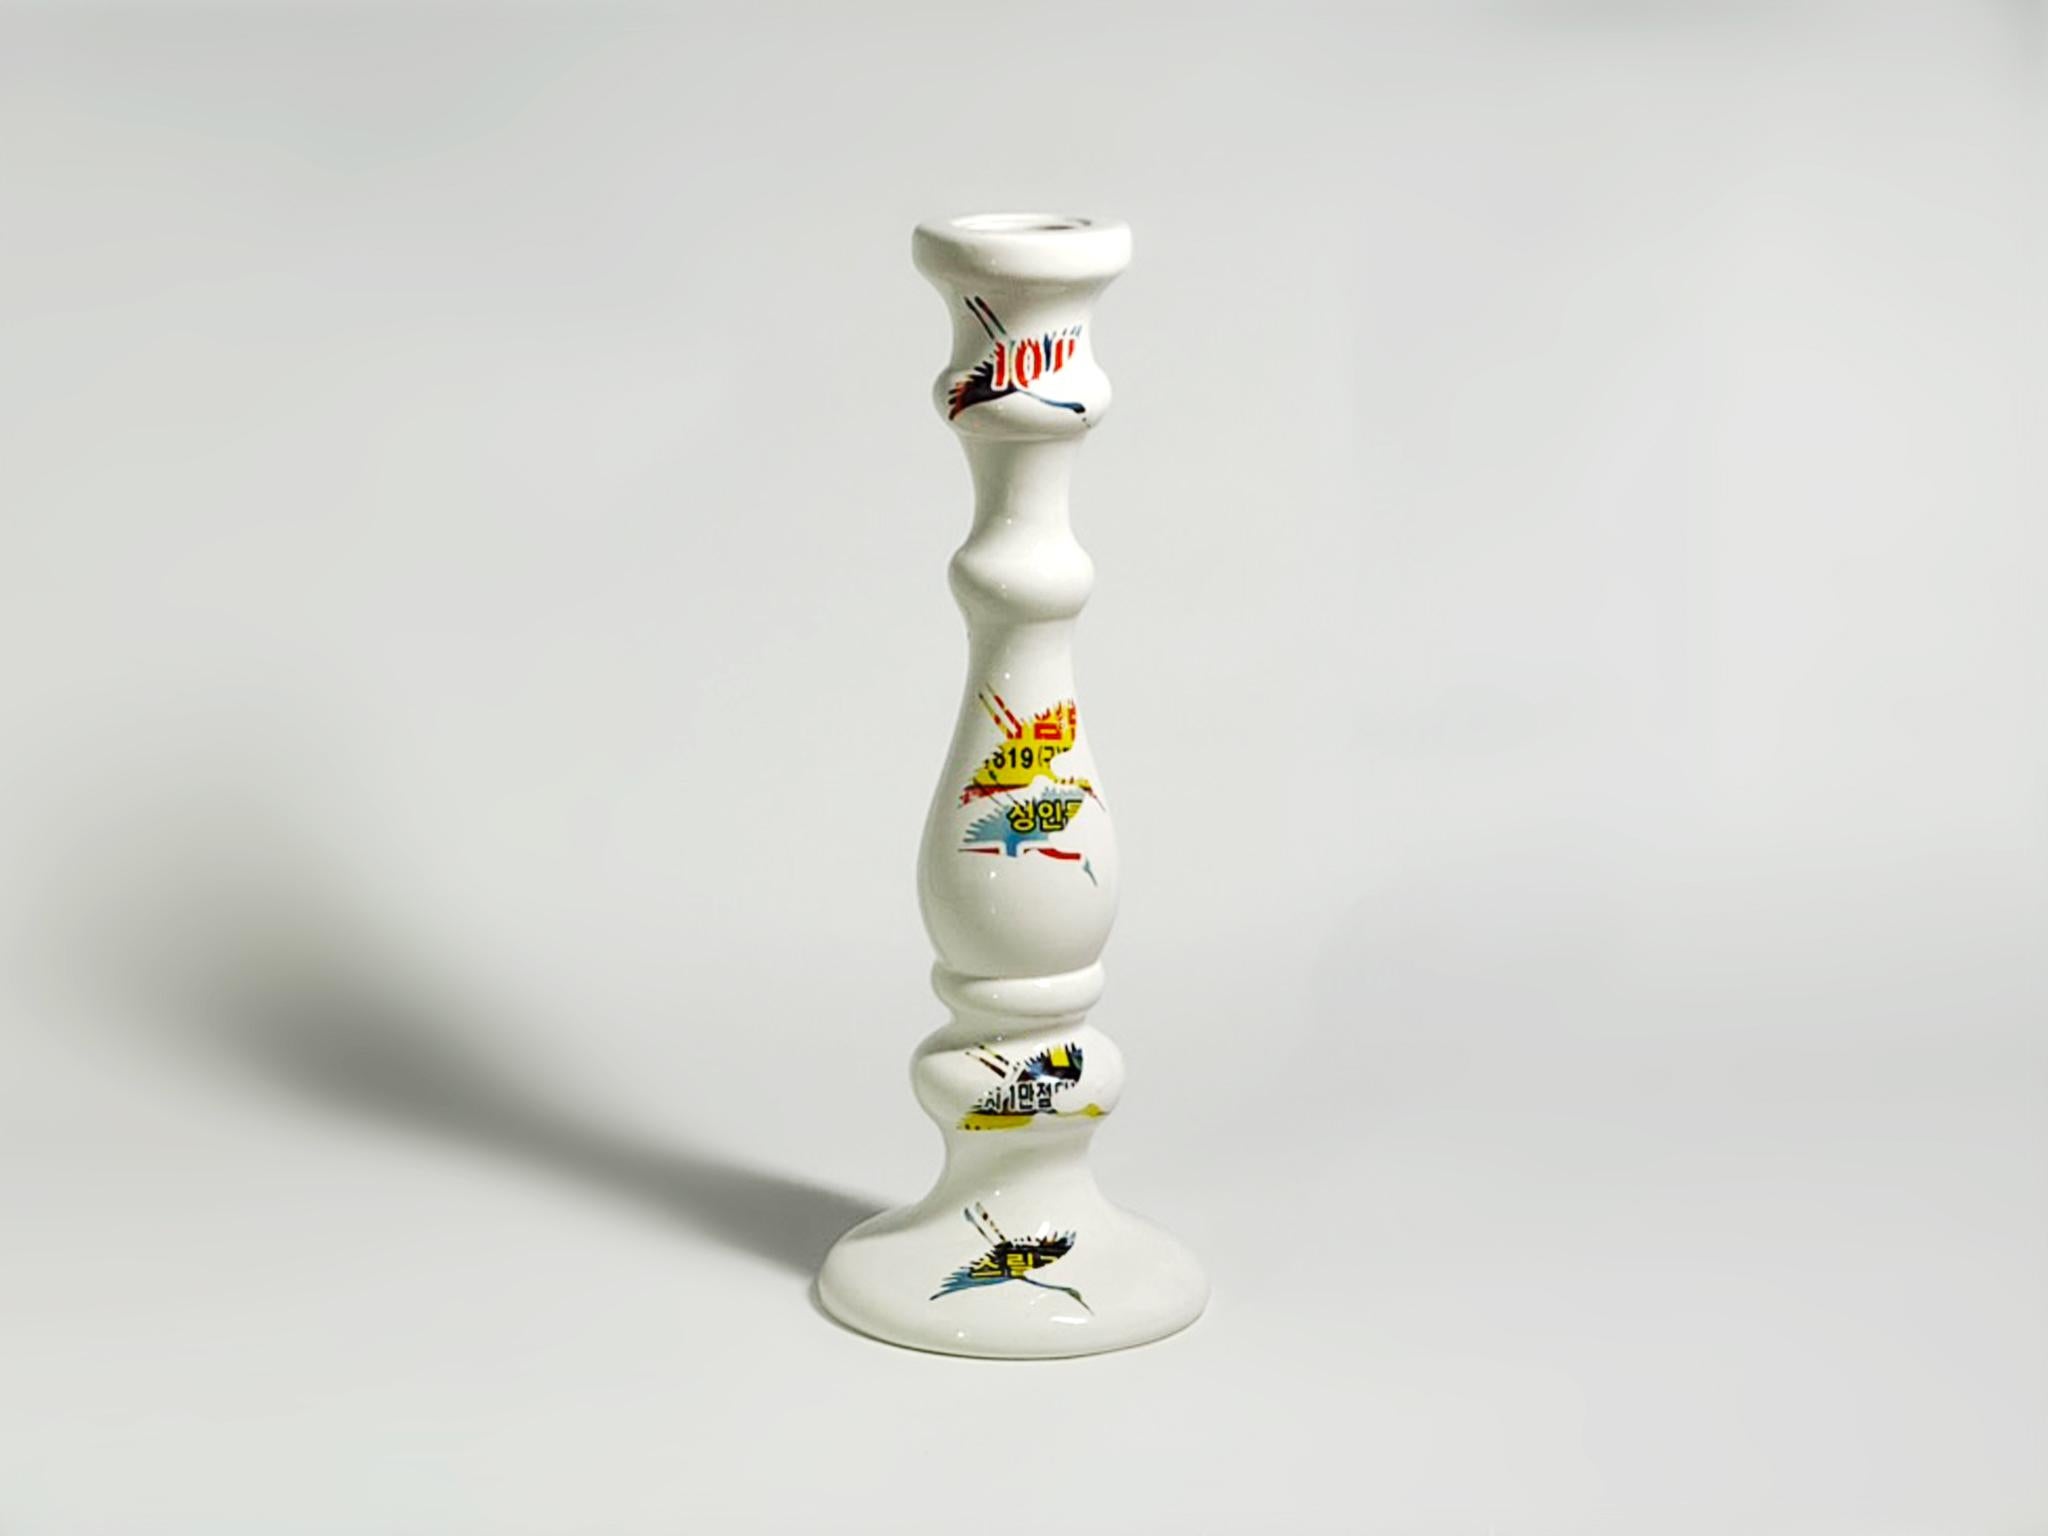 Störung #01, 2023 von Yongwon Noh
Aus der Serie Glitch
Keramik
Größe: 10,6 Zoll. H x 3.9 in. W x 3.9 in. D
Gewicht: 1kg Unverpackt
Einzigartiges Stück
Signatur auf dem Boden der Vase

Die Glitch-Serie ist eine zeitgenössische Neuinterpretation der